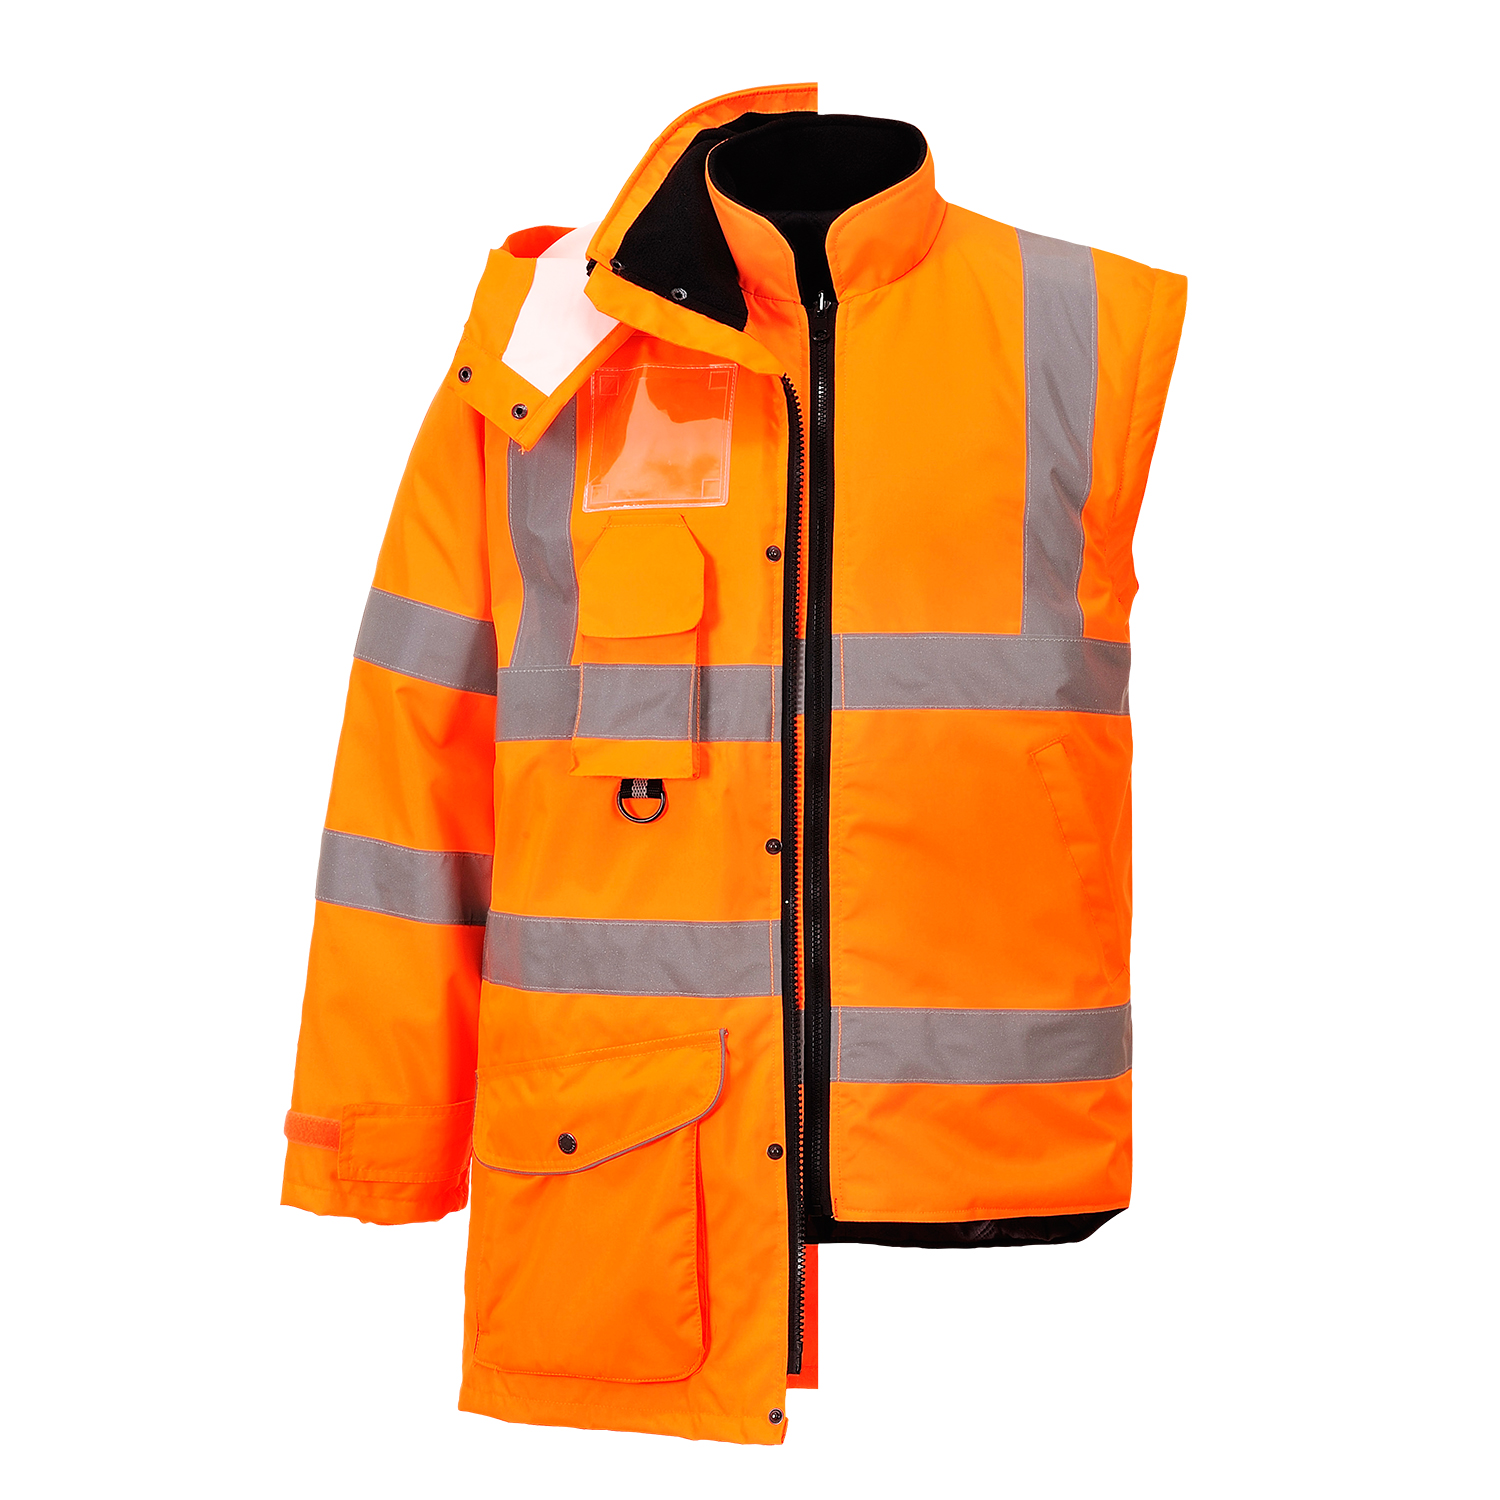 Куртка утепленная светоотражающая RT27, цв. оранжевый, 7 в 1